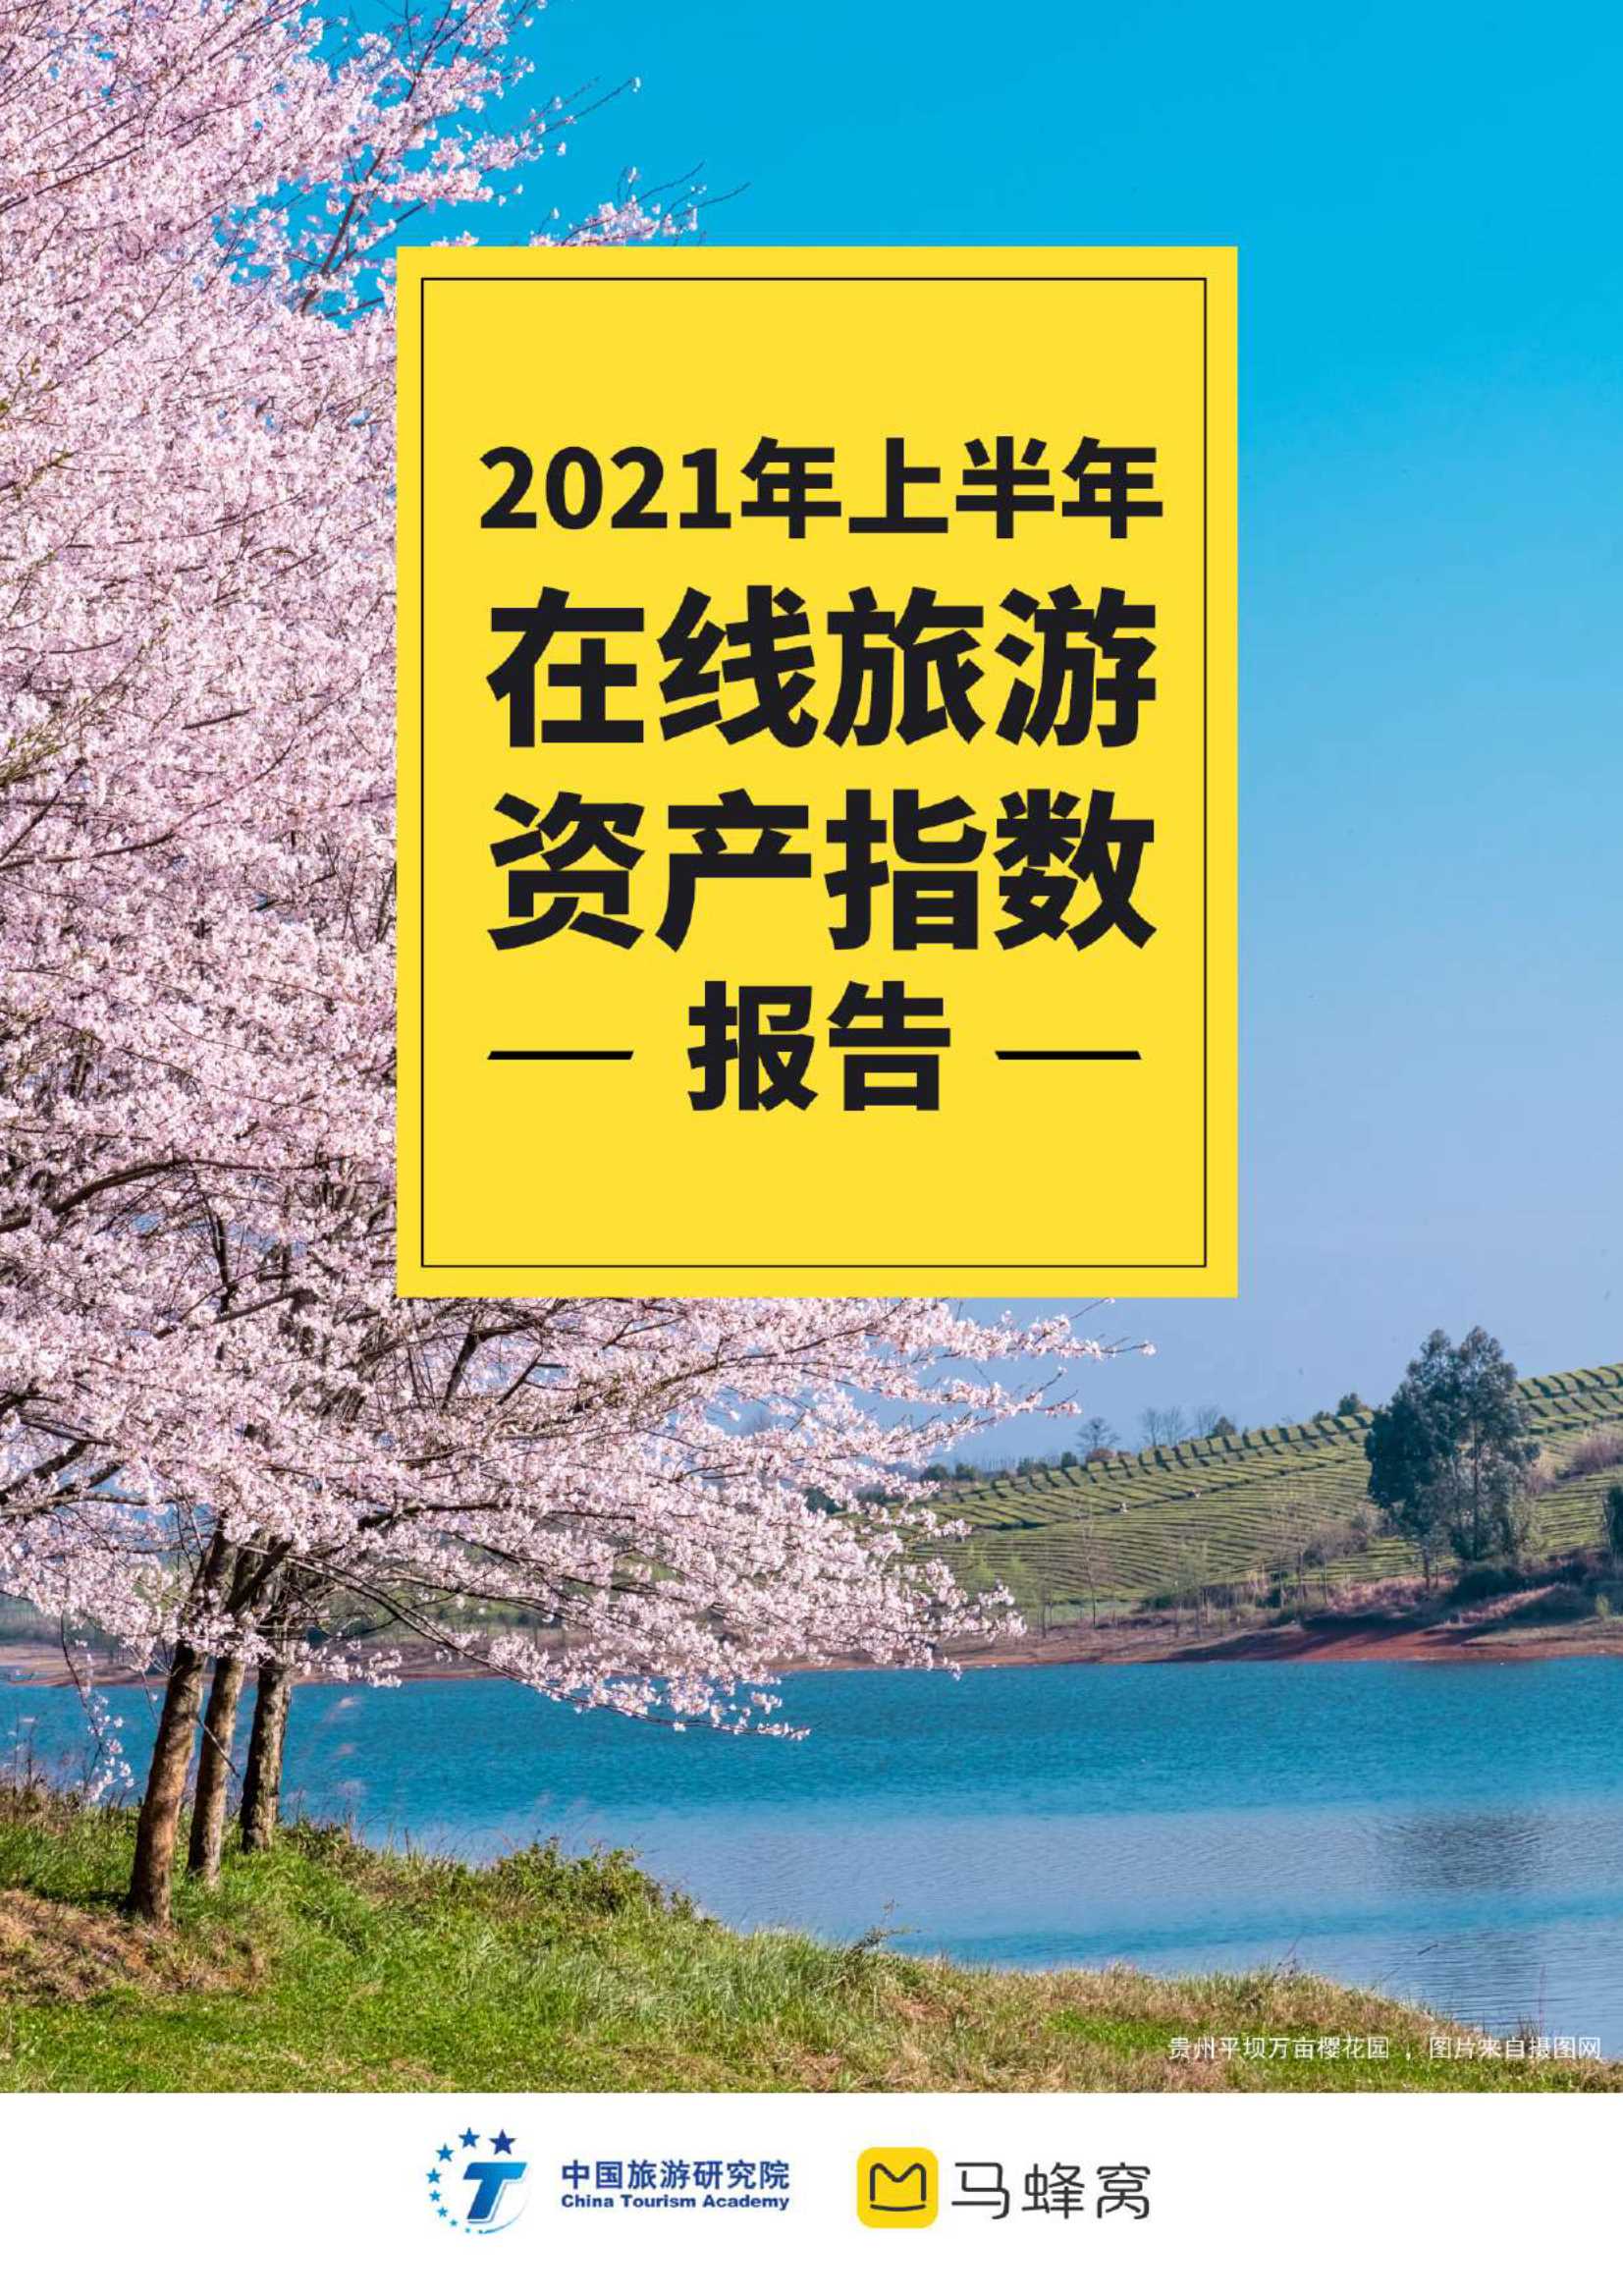 马蜂窝&中国旅游研究院-2021上半年在线旅游资产指数报告-2021.09-37页